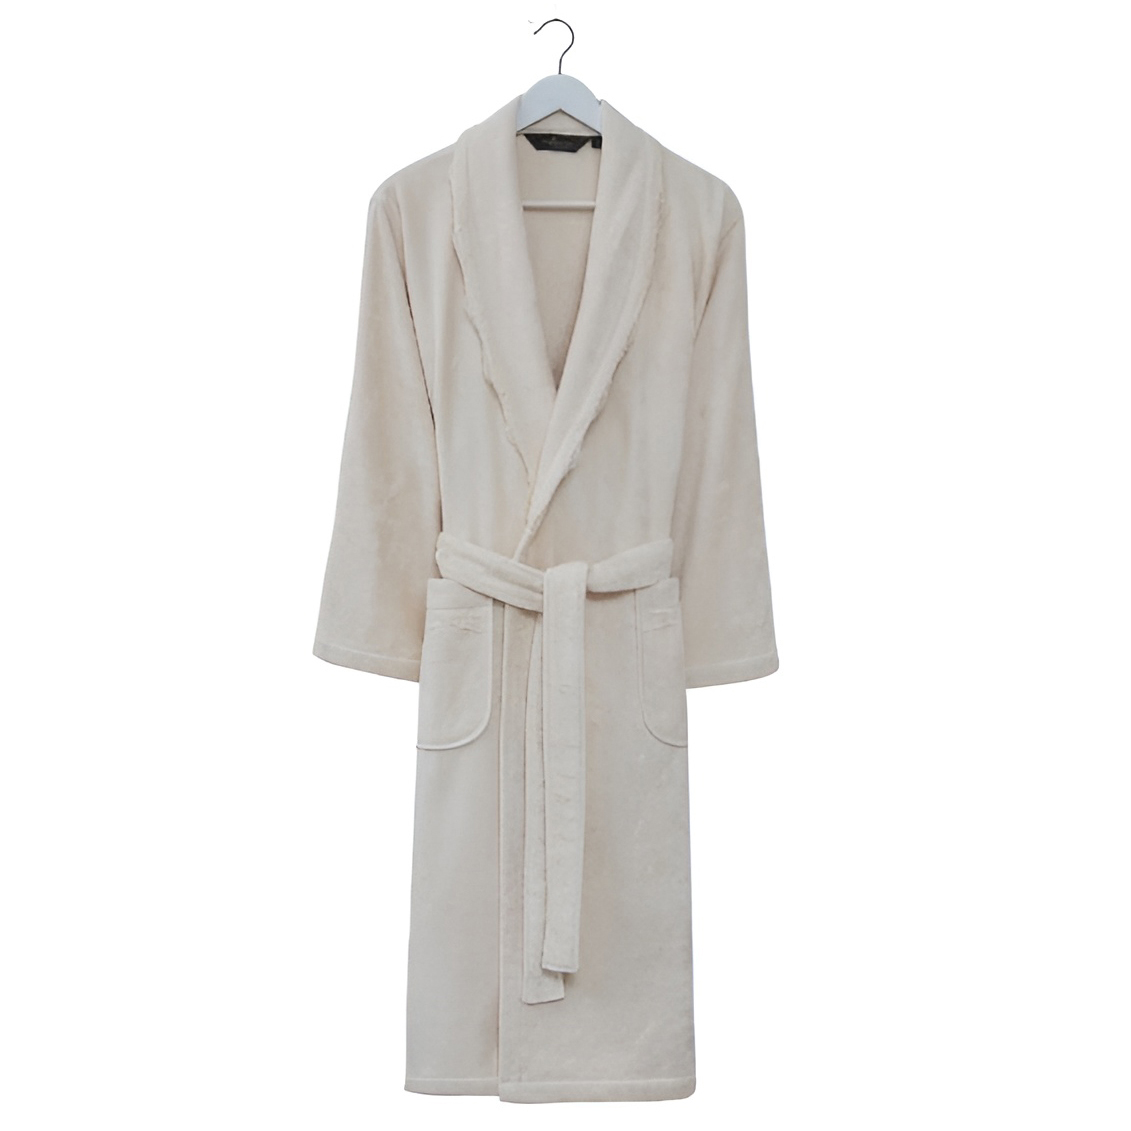 Банный халат Stella цвет: кремовый (S) Soft cotton